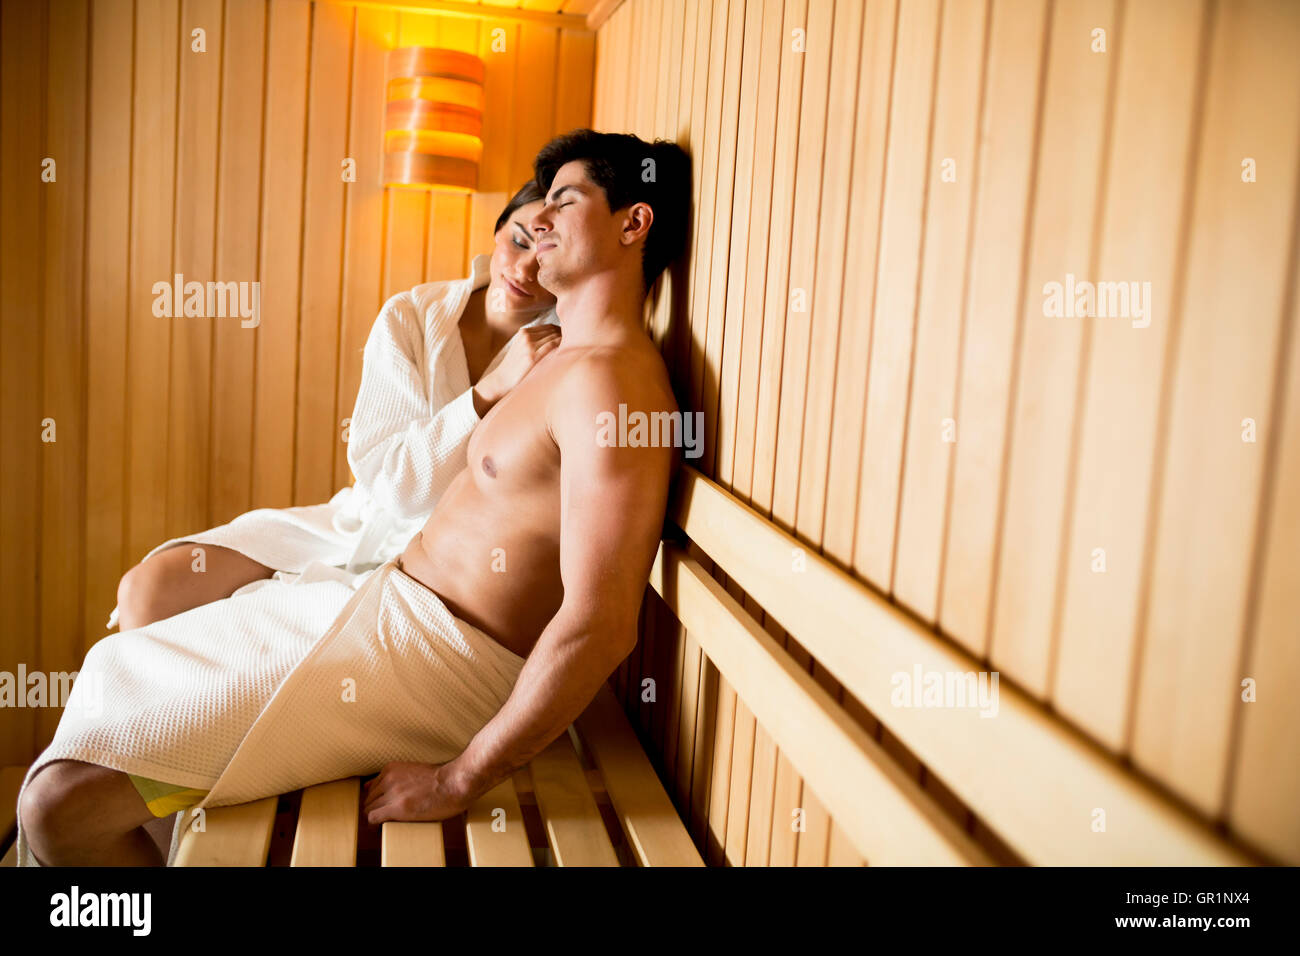 Coppia giovane ralxing nella sauna Foto Stock